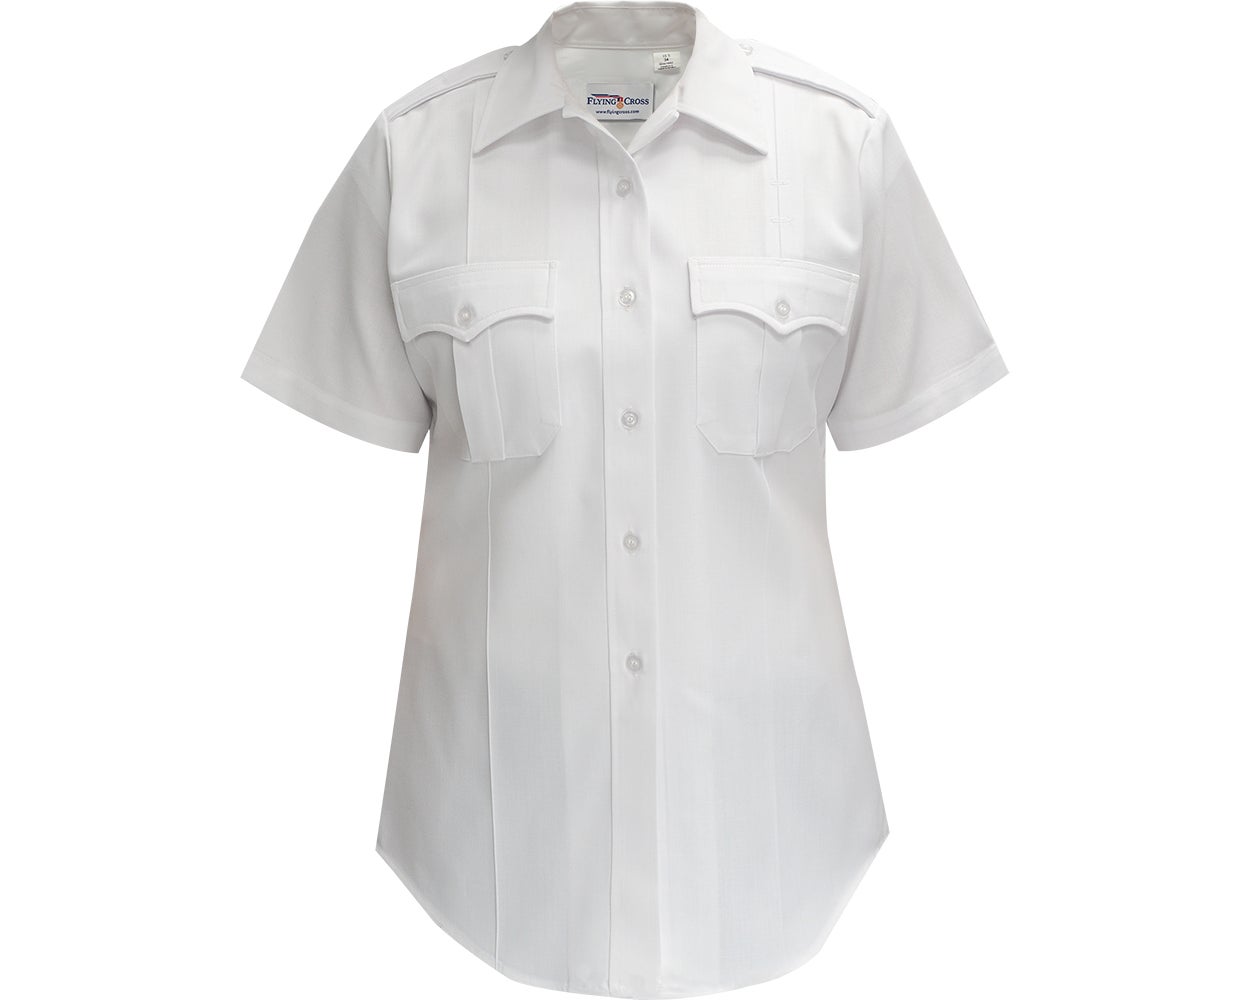 Flying Cross Command Women's 100% Polyester Short Sleeve Uniform Shirt 176R78 - White, 30